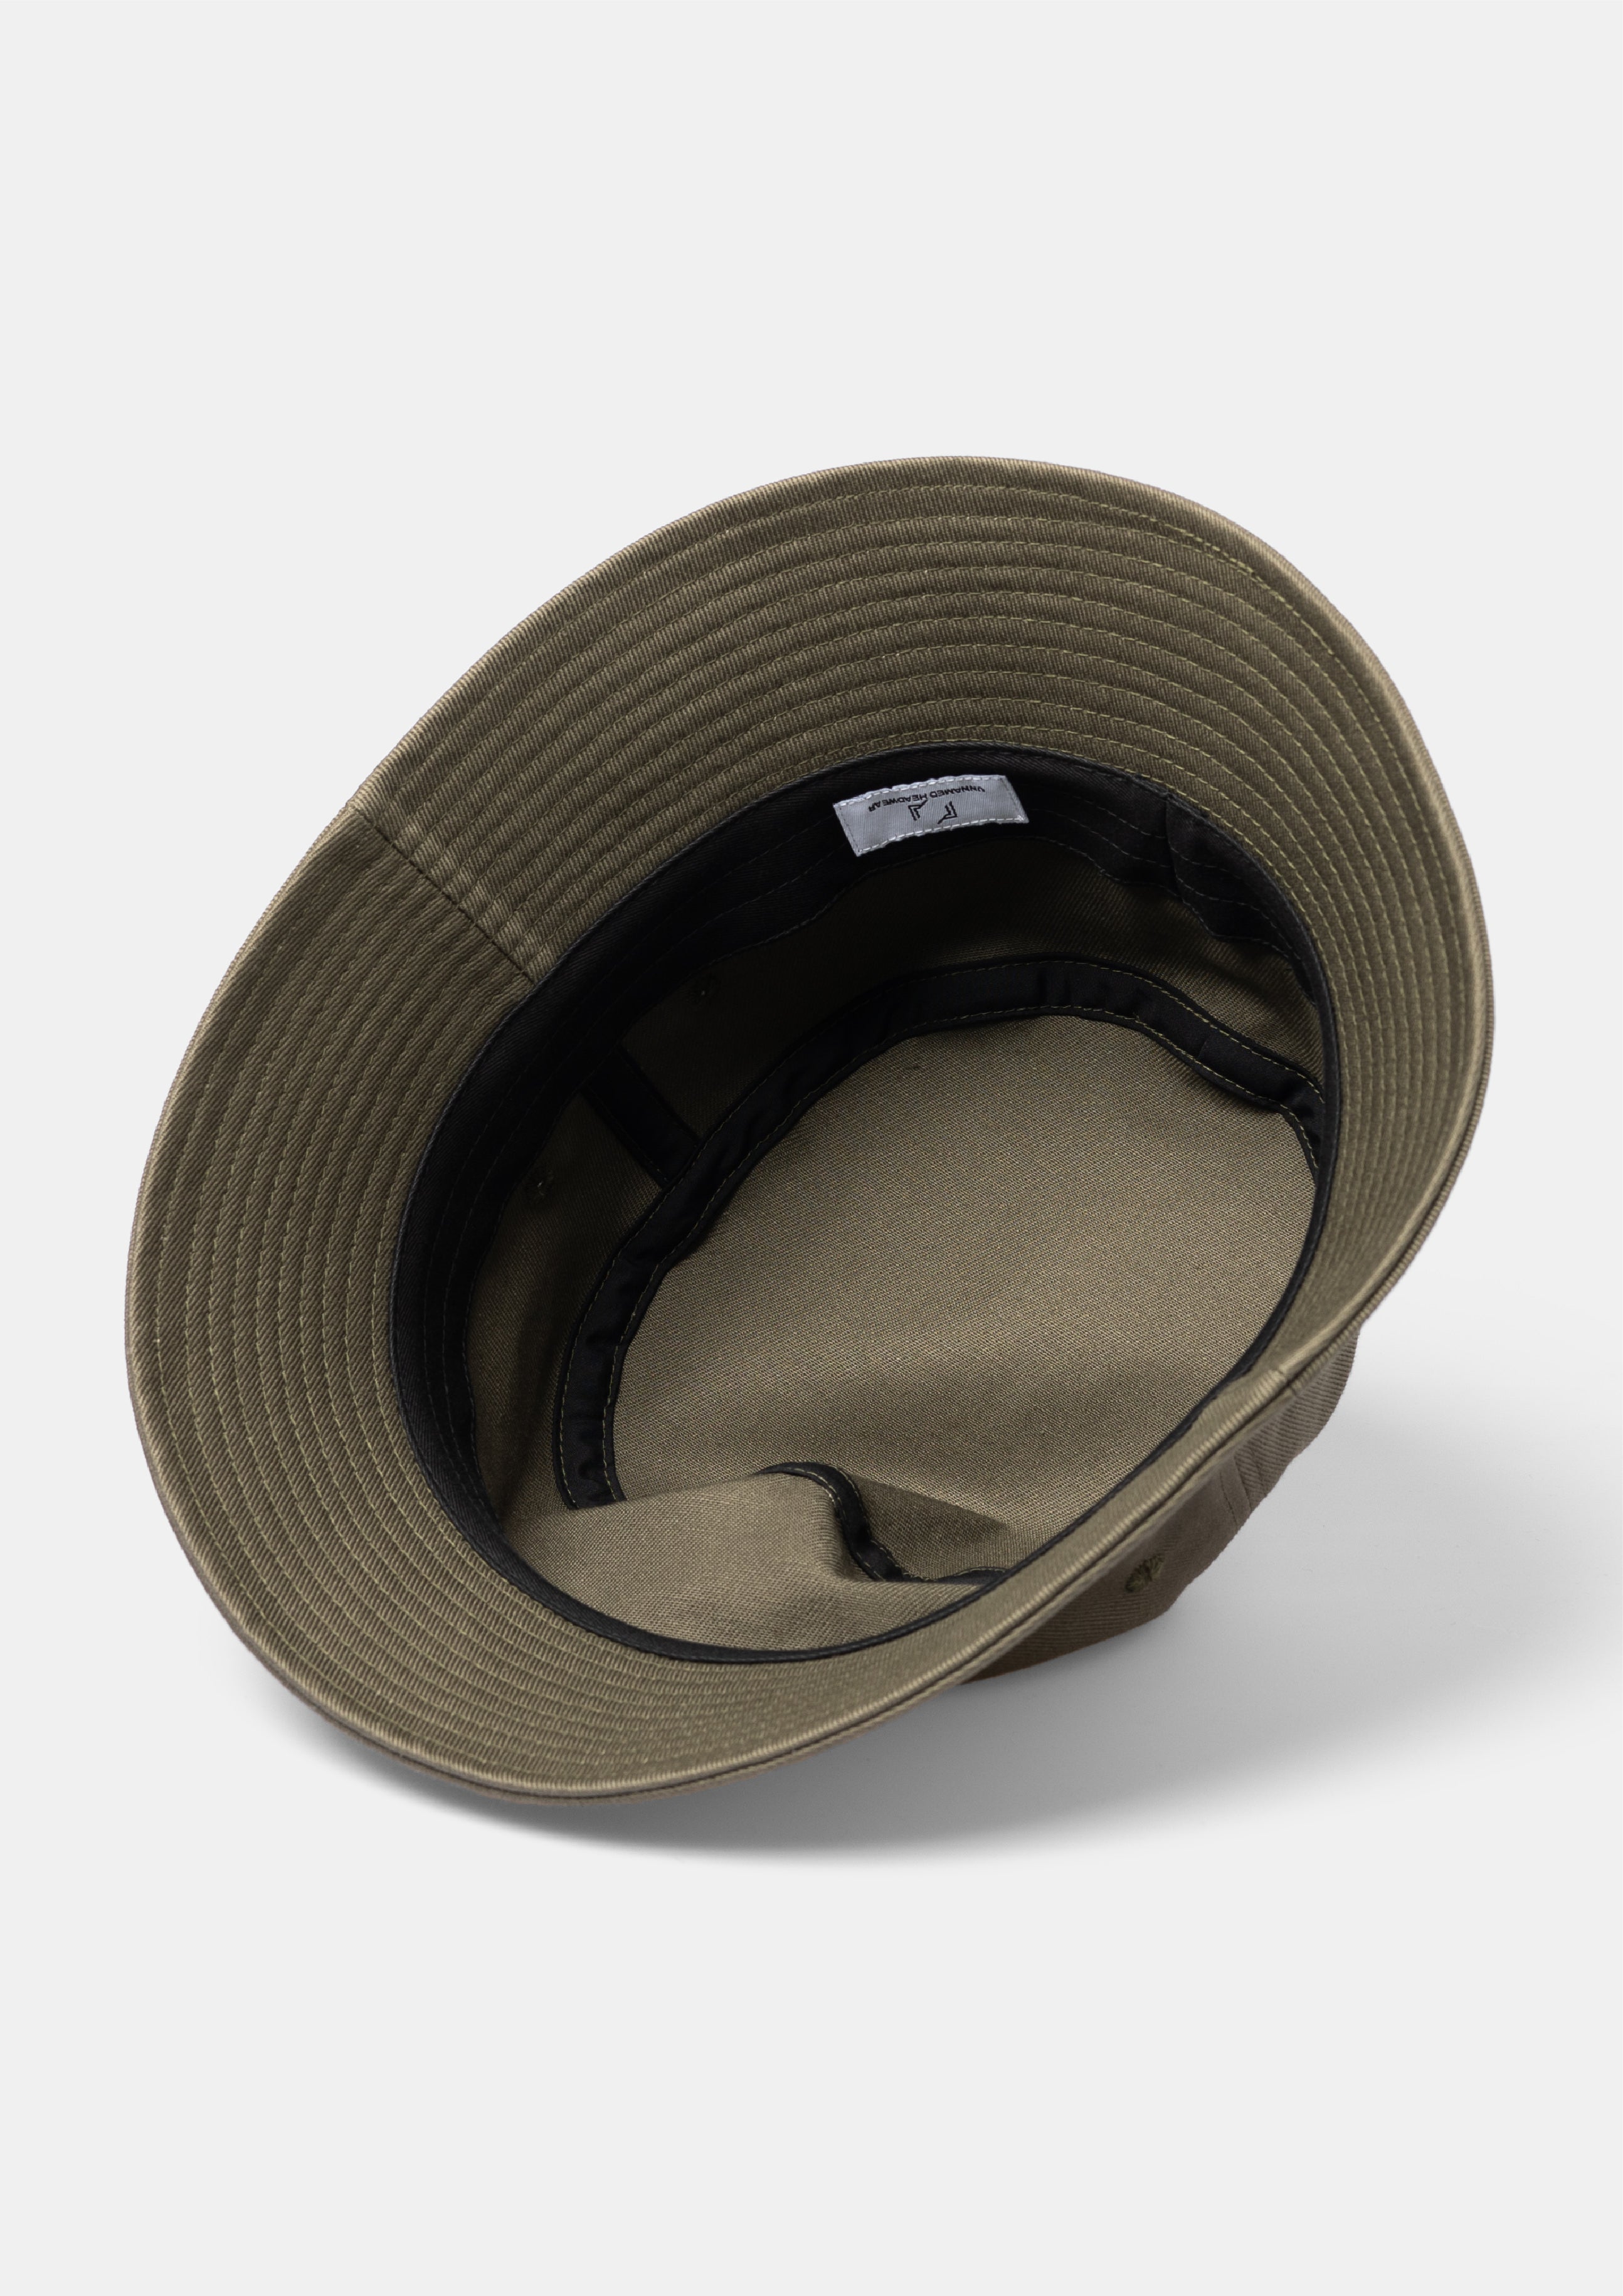 御出産御祝 御祝 出産祝い unnamed headwear bucket hat | tatihome.com